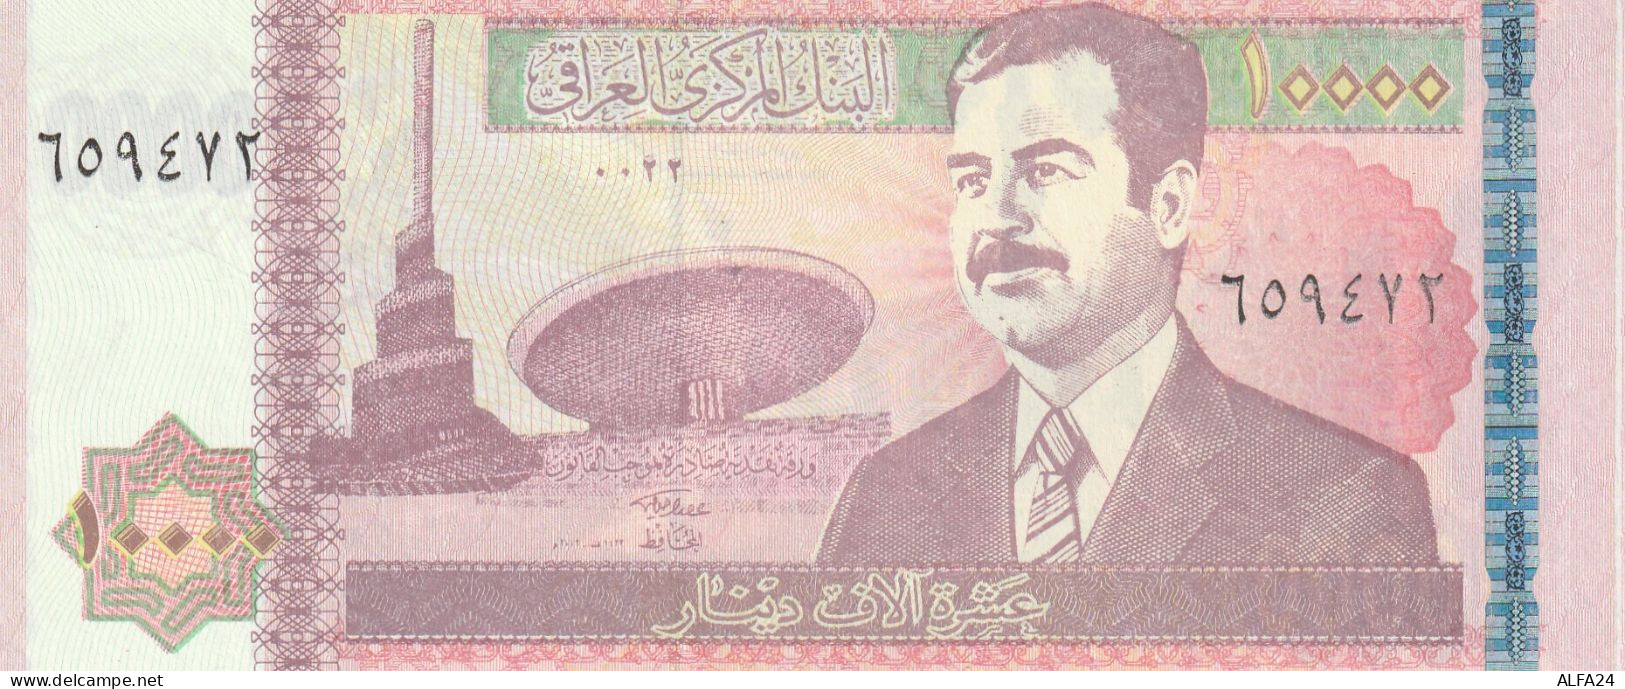 BANCONOTA IRAQ 10000 UNC  (B_566 - Iraq